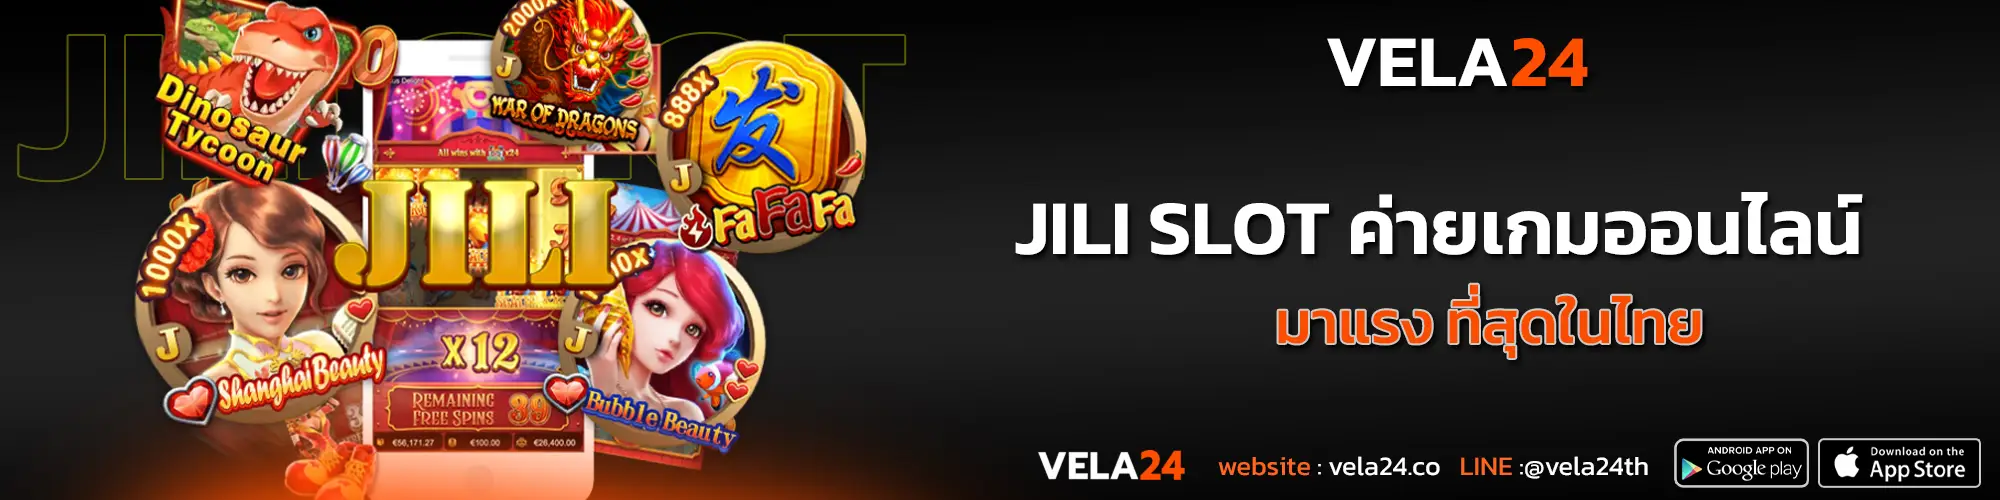 JILI SLOT ค่ายเกมออนไลน์ มาแรง ที่สุดในไทย